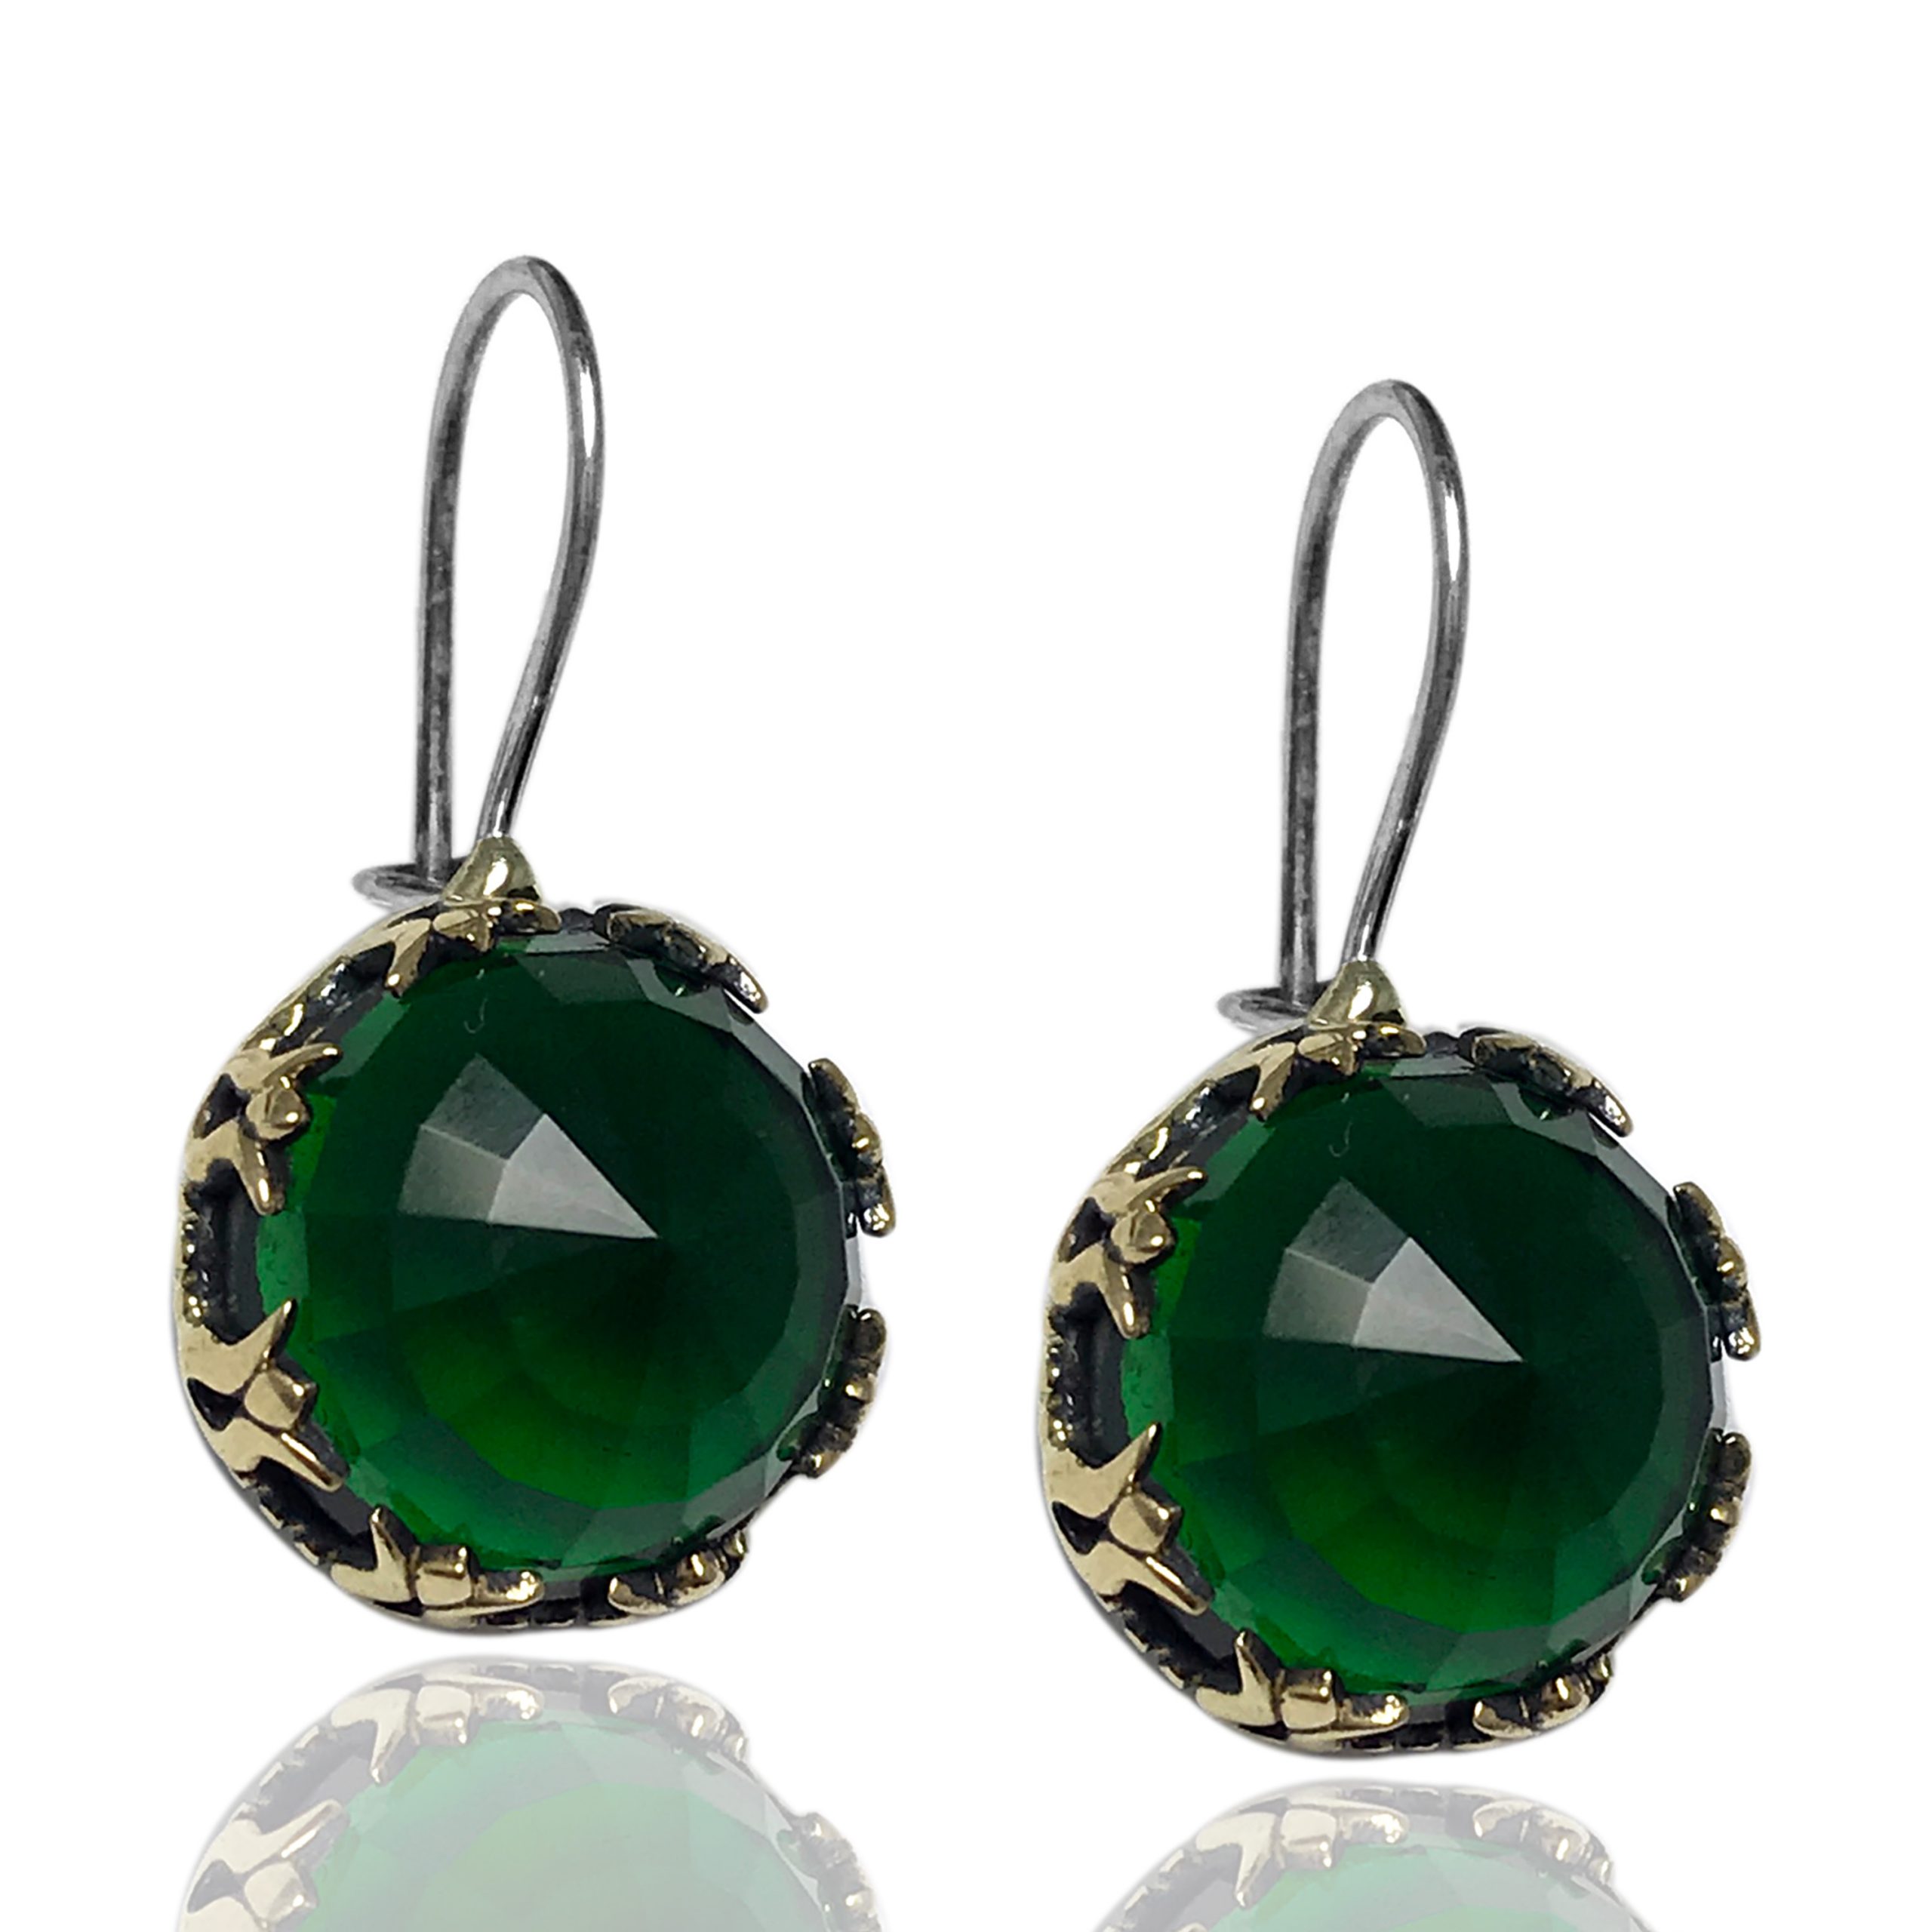 Bedelen ritme Megalopolis Oorbellen met groene steen - Rosa Juwelen